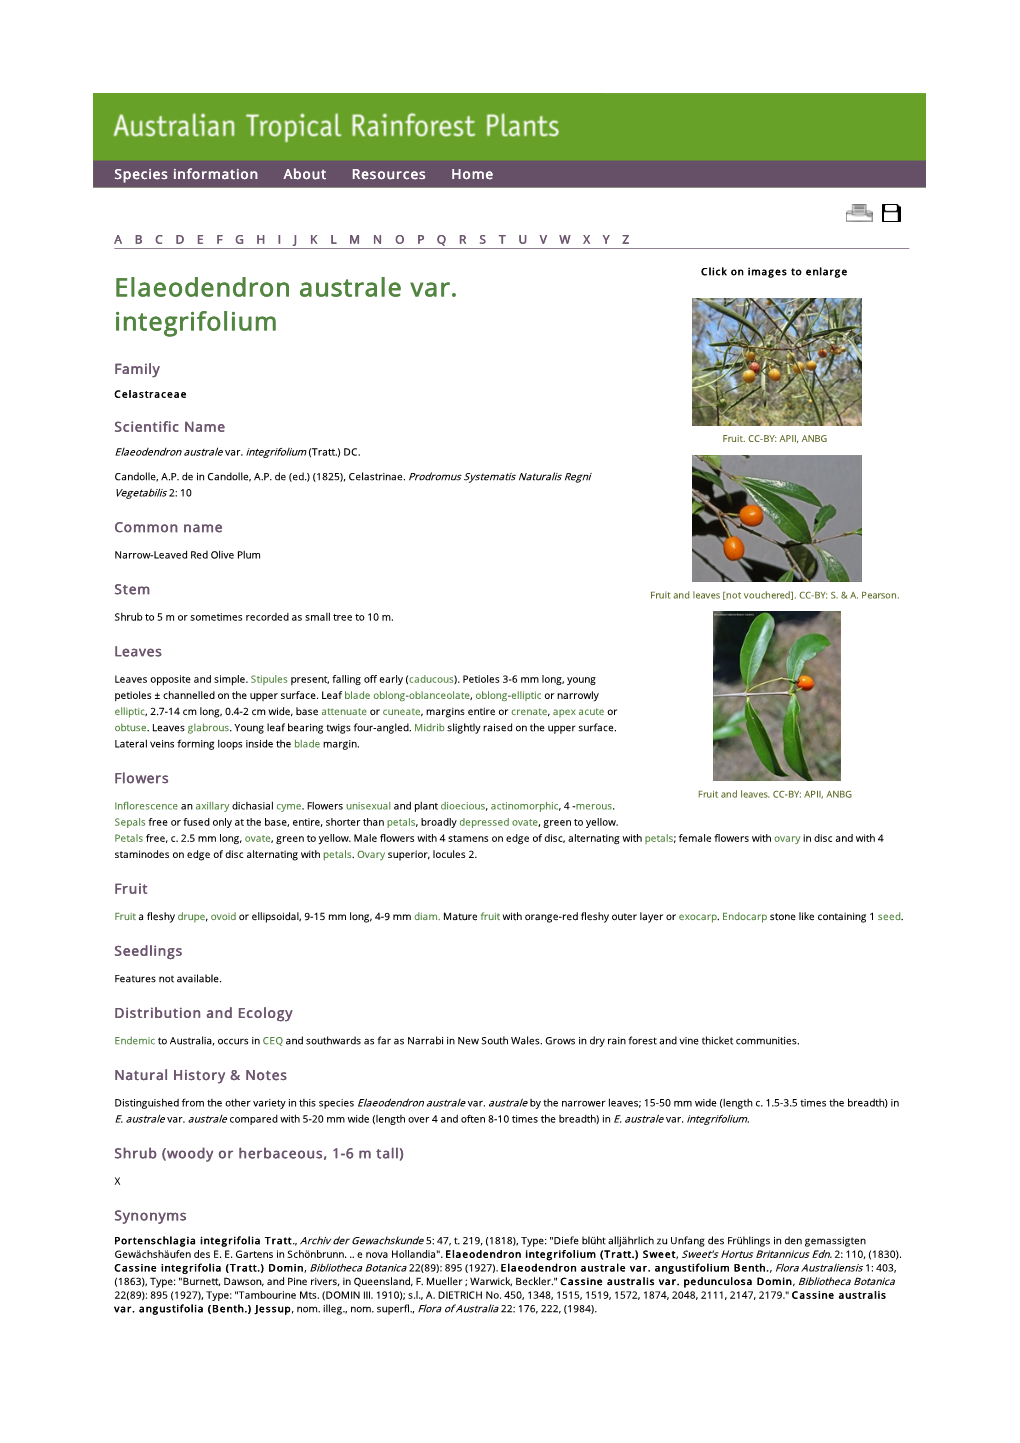 Elaeodendron Australe Var. Integrifolium (Tratt.) DC